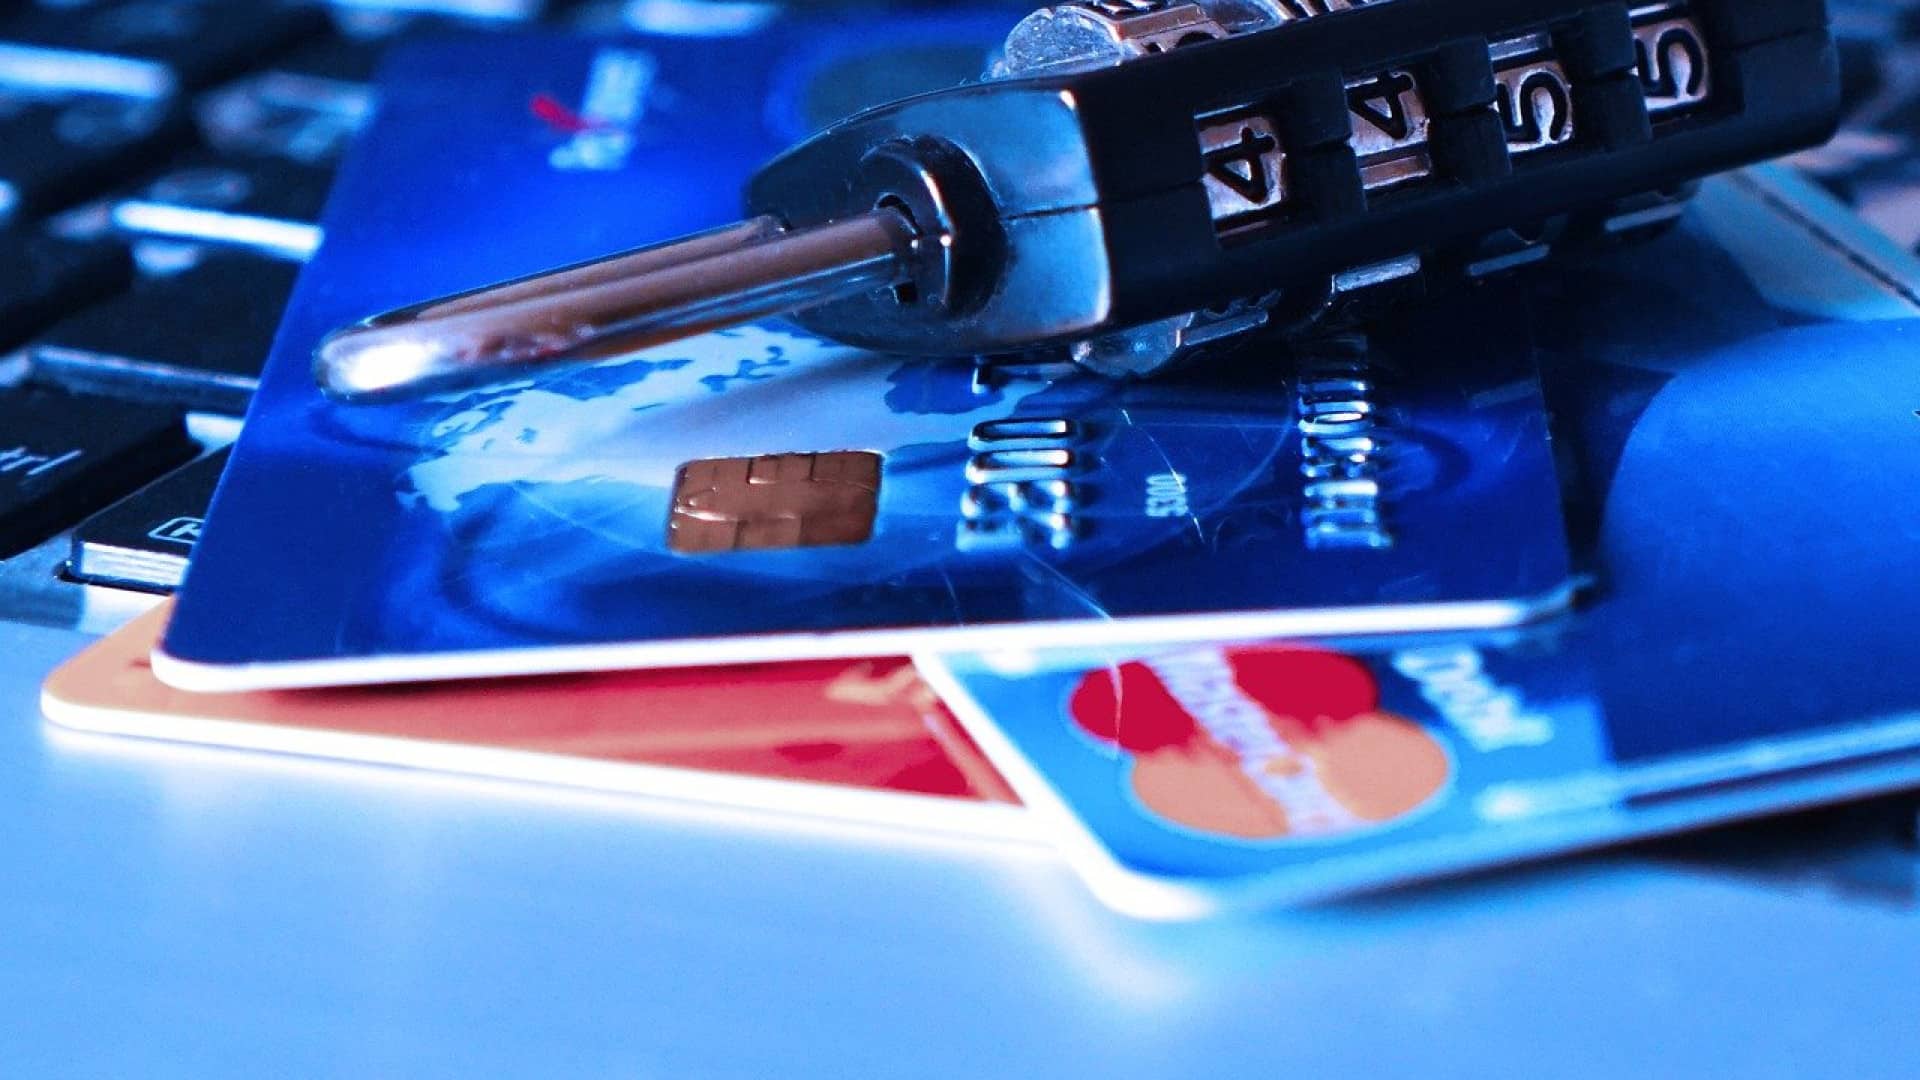 Jeunes : pourquoi choisir d’utiliser une carte bancaire ?